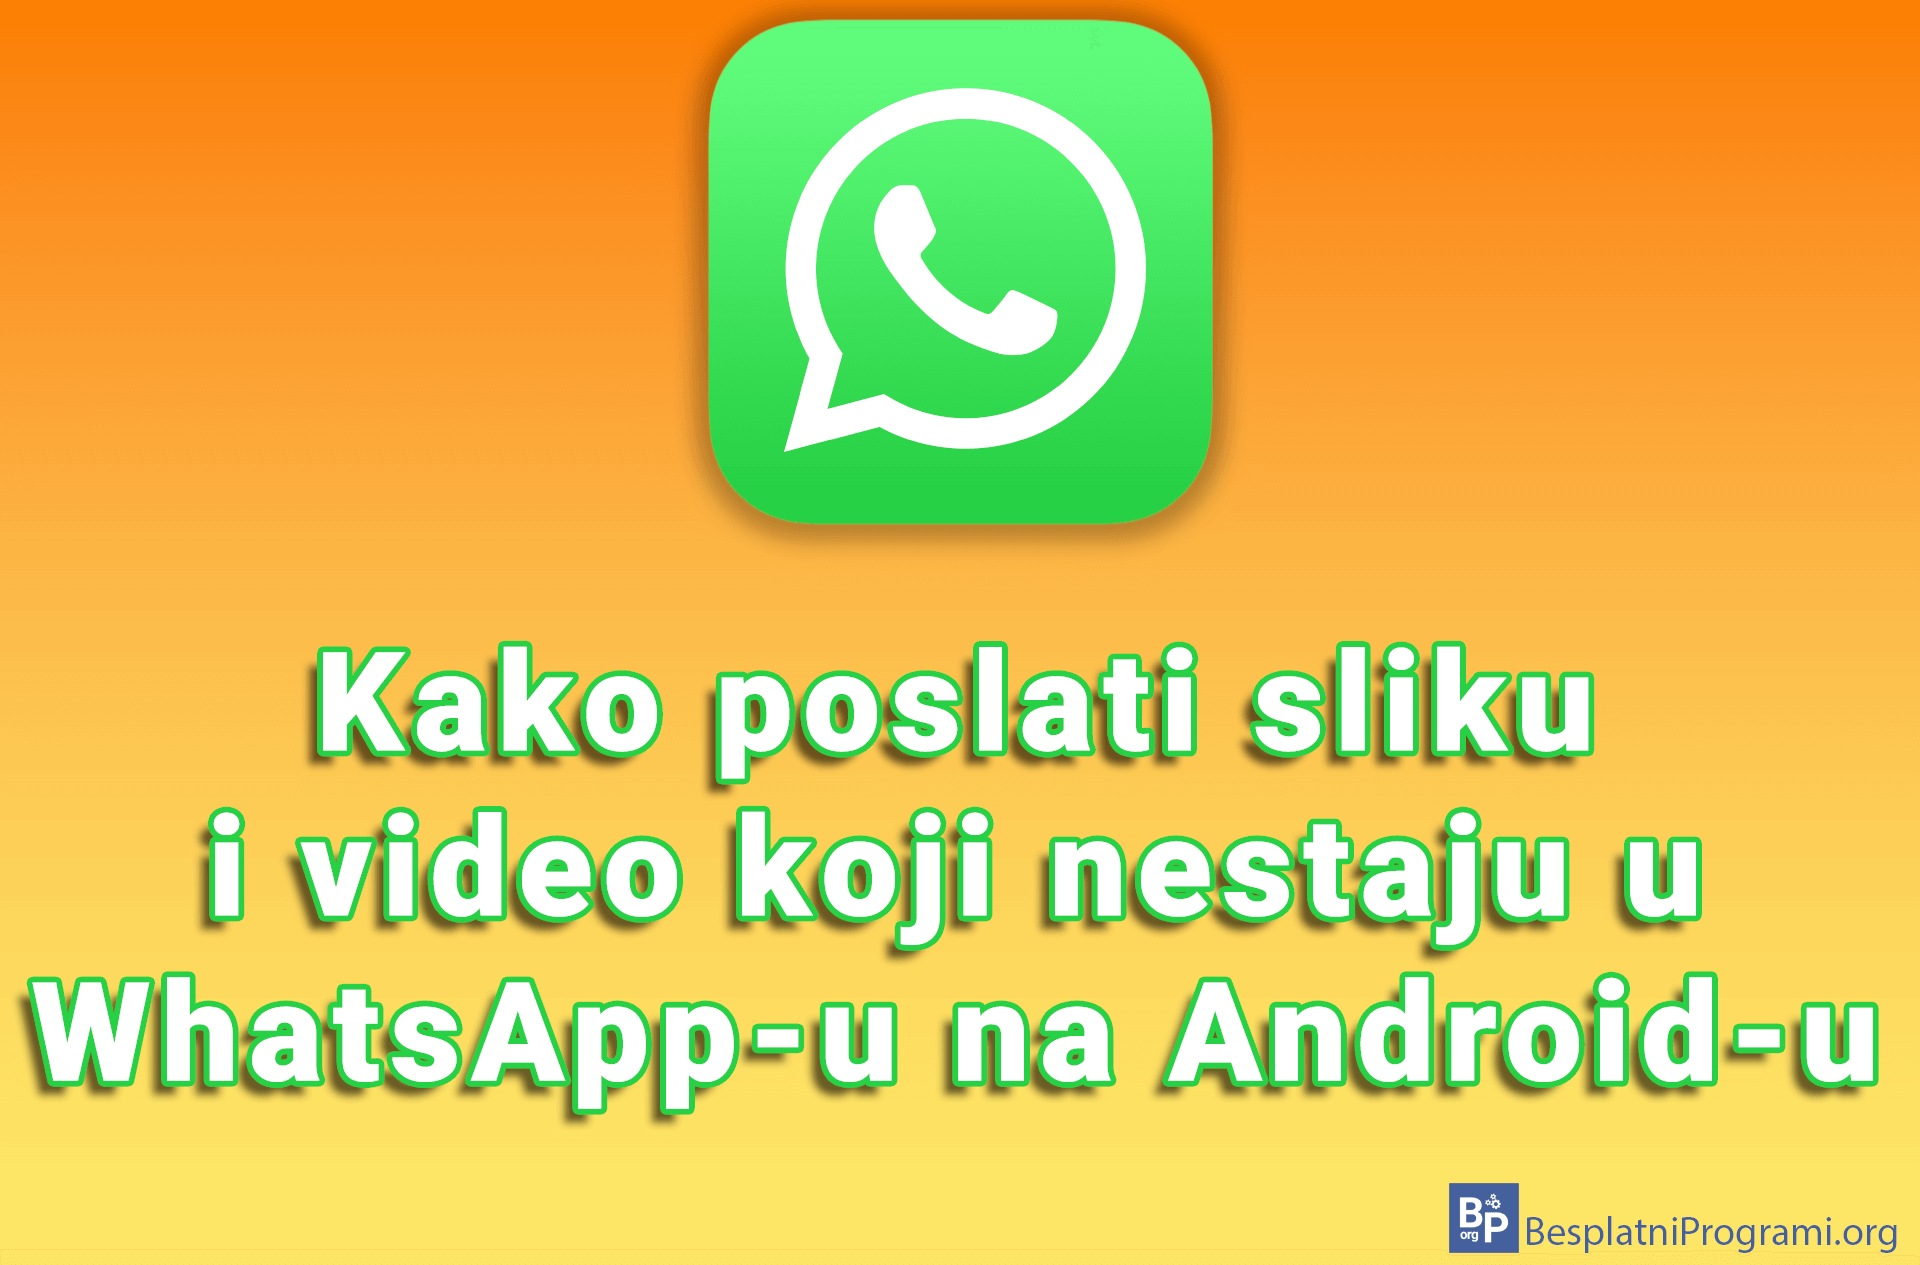 Kako poslati sliku i video koji nestaju u WhatsApp-u na Android-u